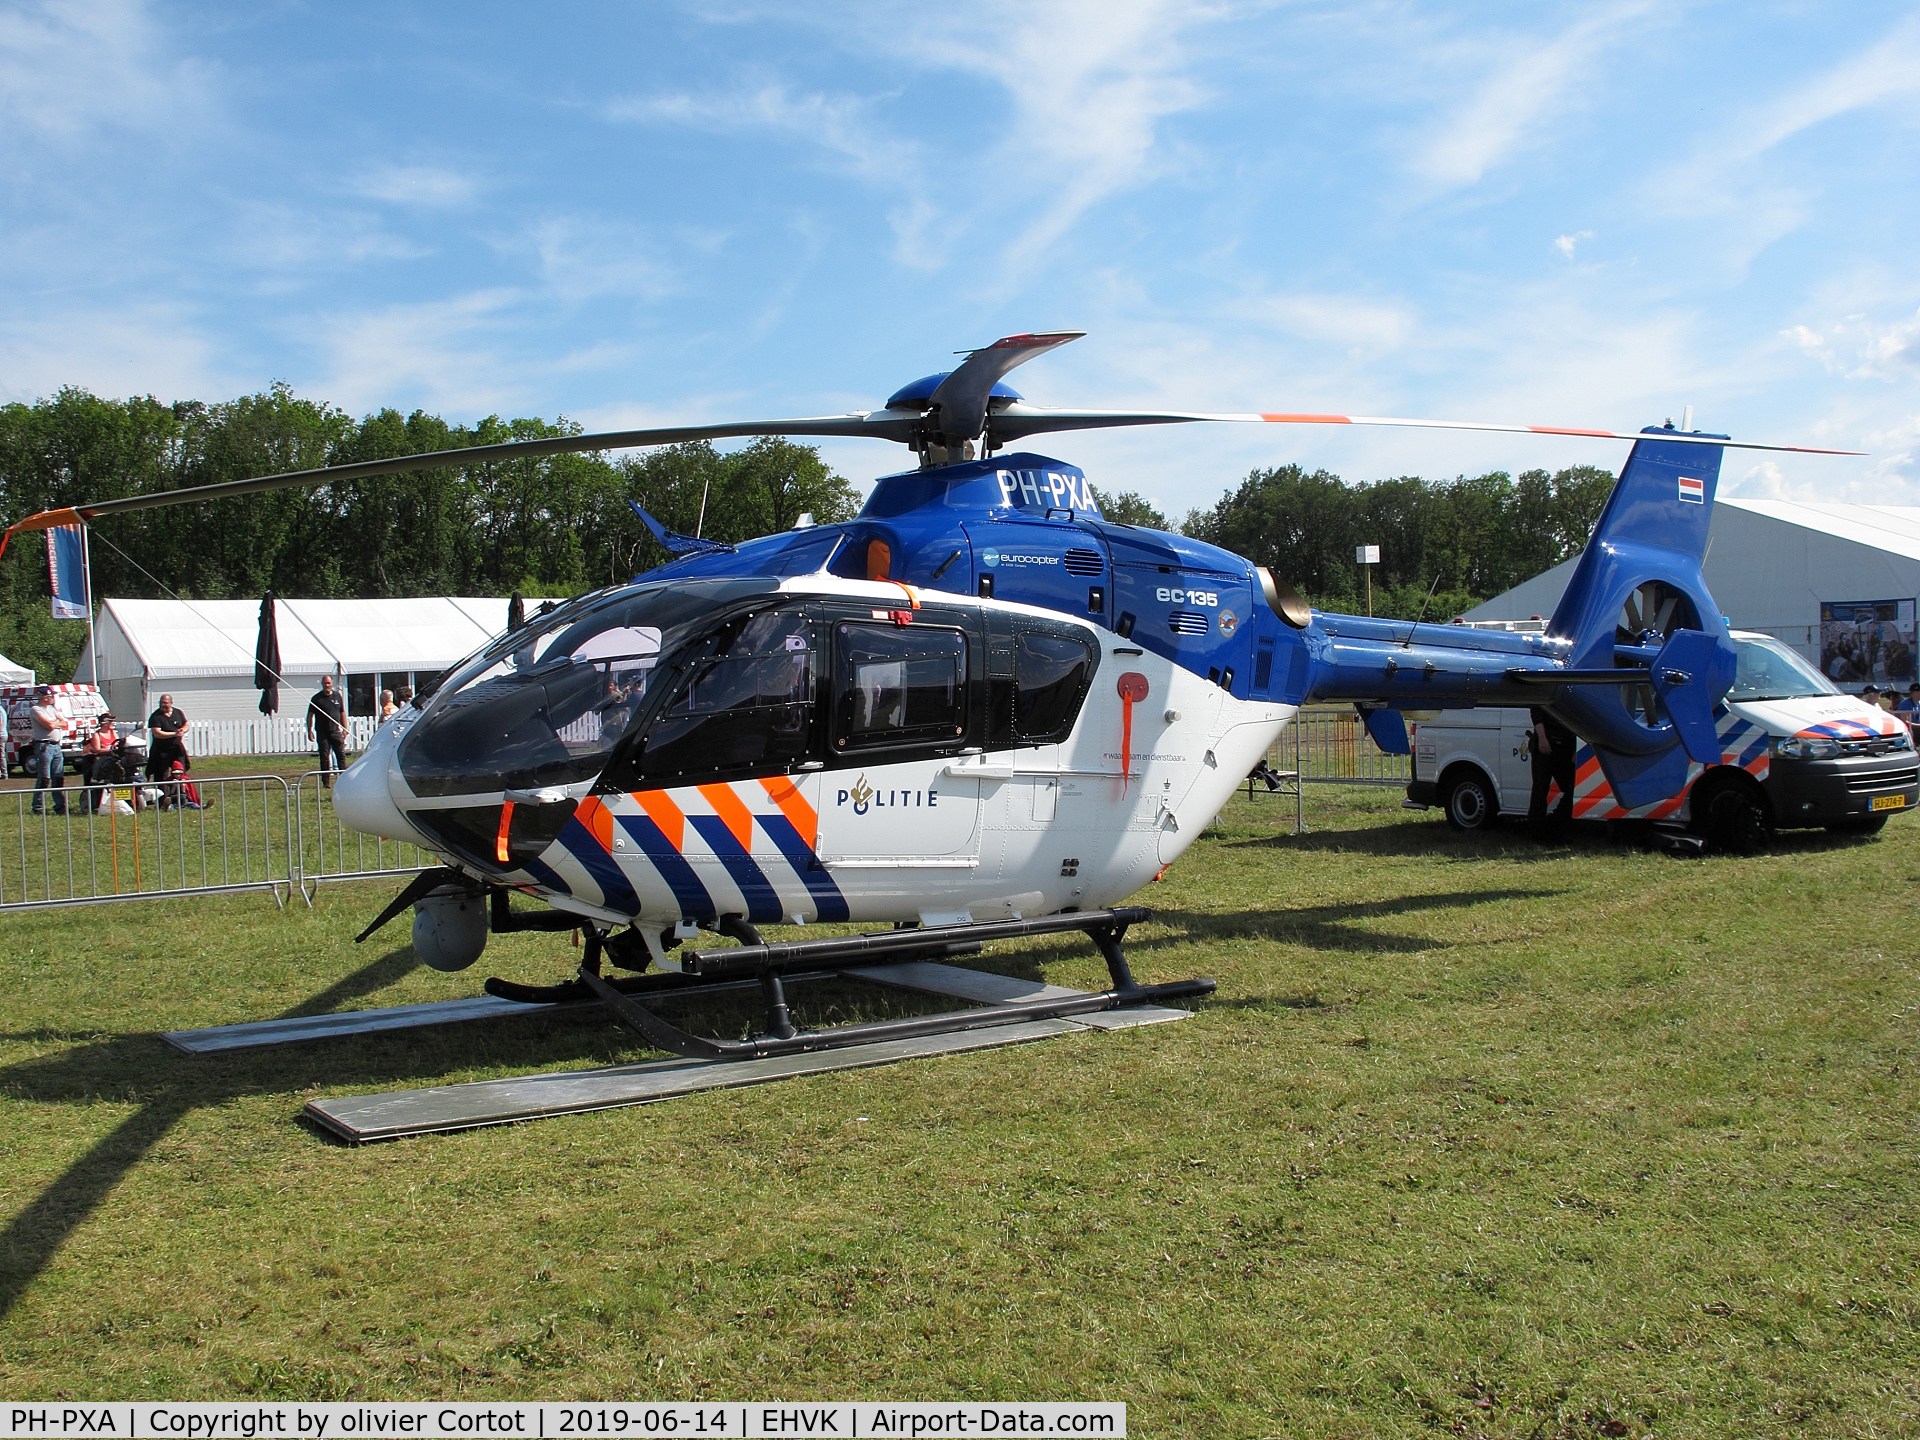 PH-PXA, 2009 Eurocopter EC-135P-2+ C/N 0760, 2019 airshow